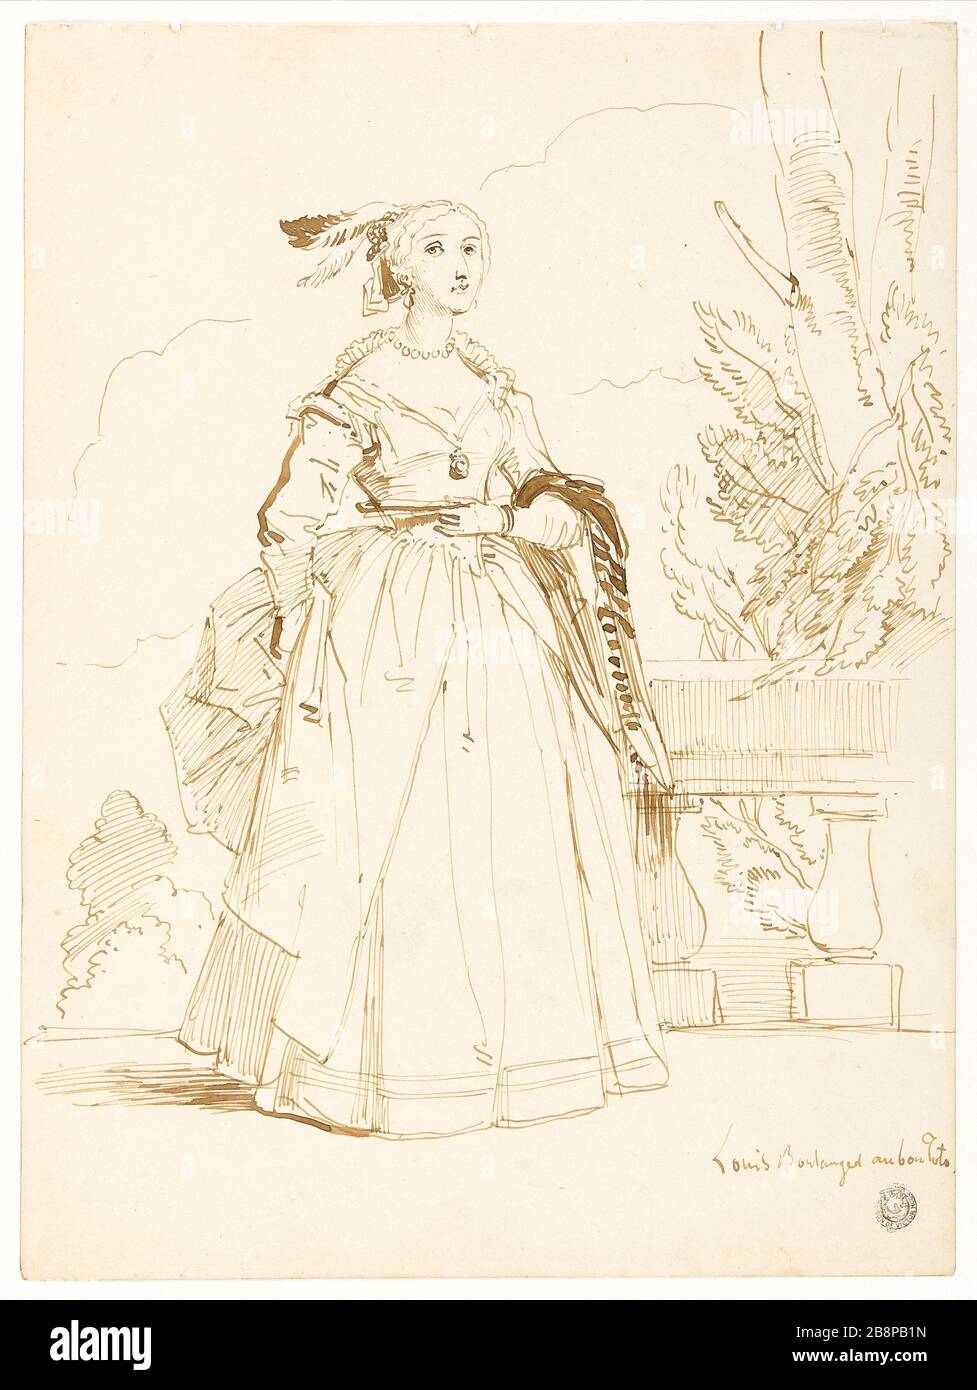 Woman in costume Louis XIII Louis Boulanger (1806-1867). 'Femme en costume Louis XIII'. Encre sur papier. Paris, Maison de Victor Hugo. Stock Photo